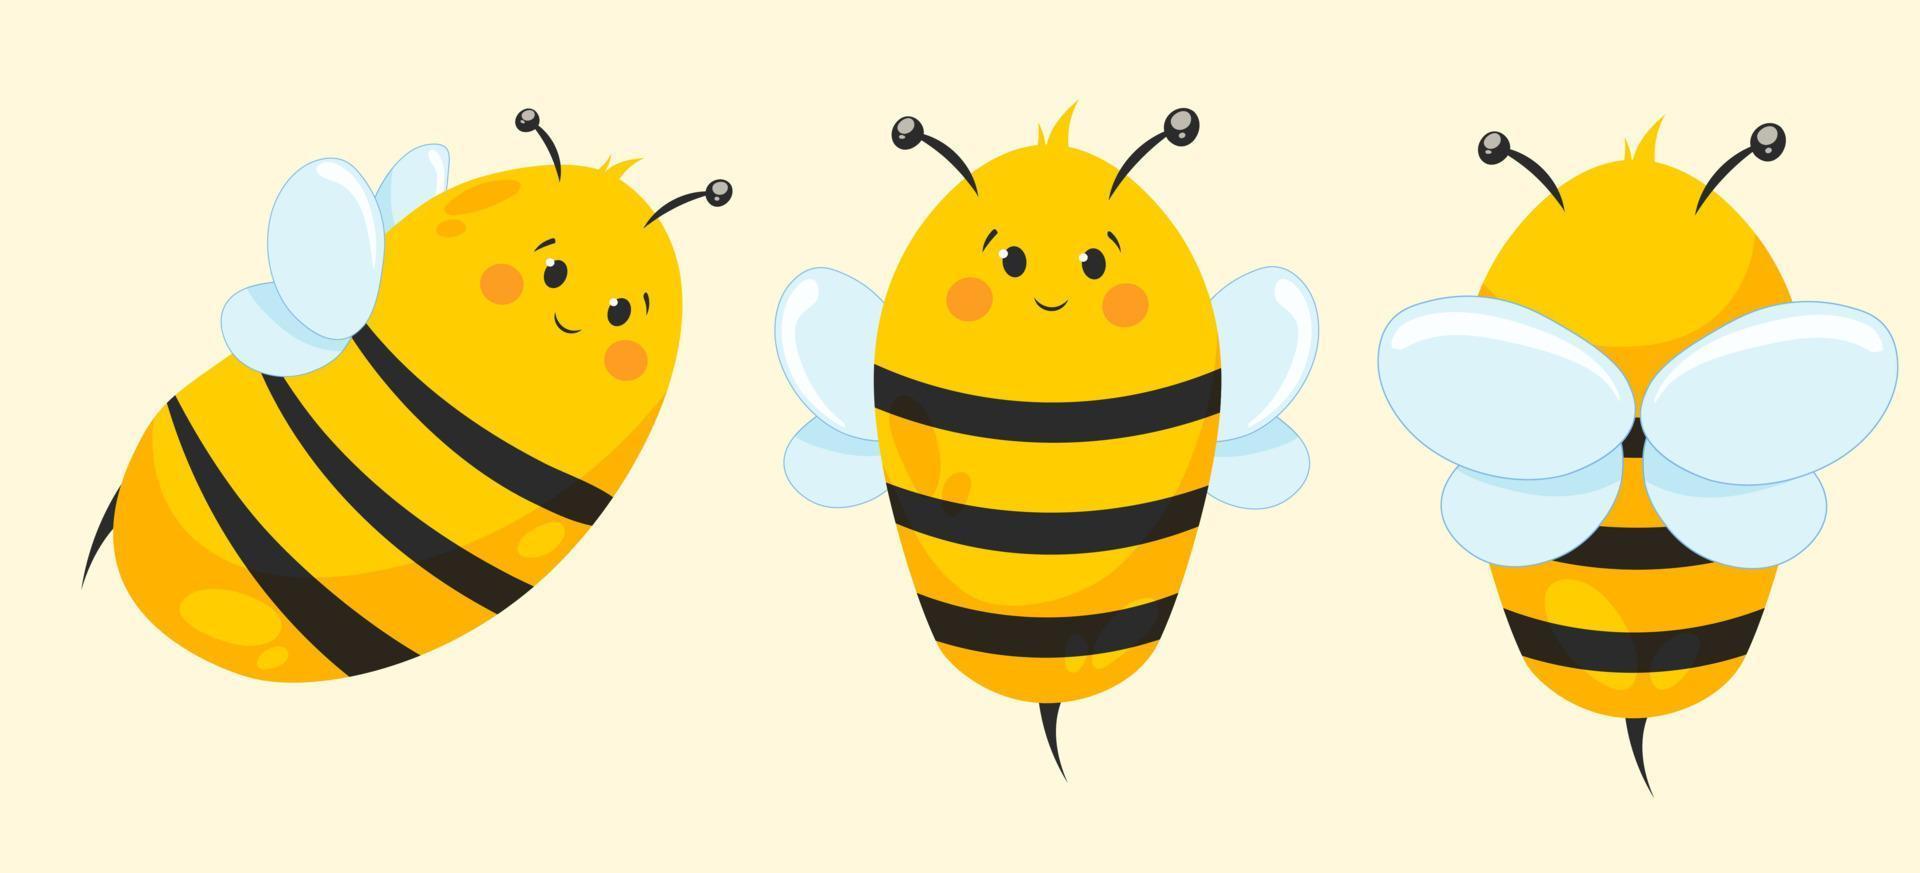 Cartoon cute bee in different angles. Bee, bumblebee for children's goods vector